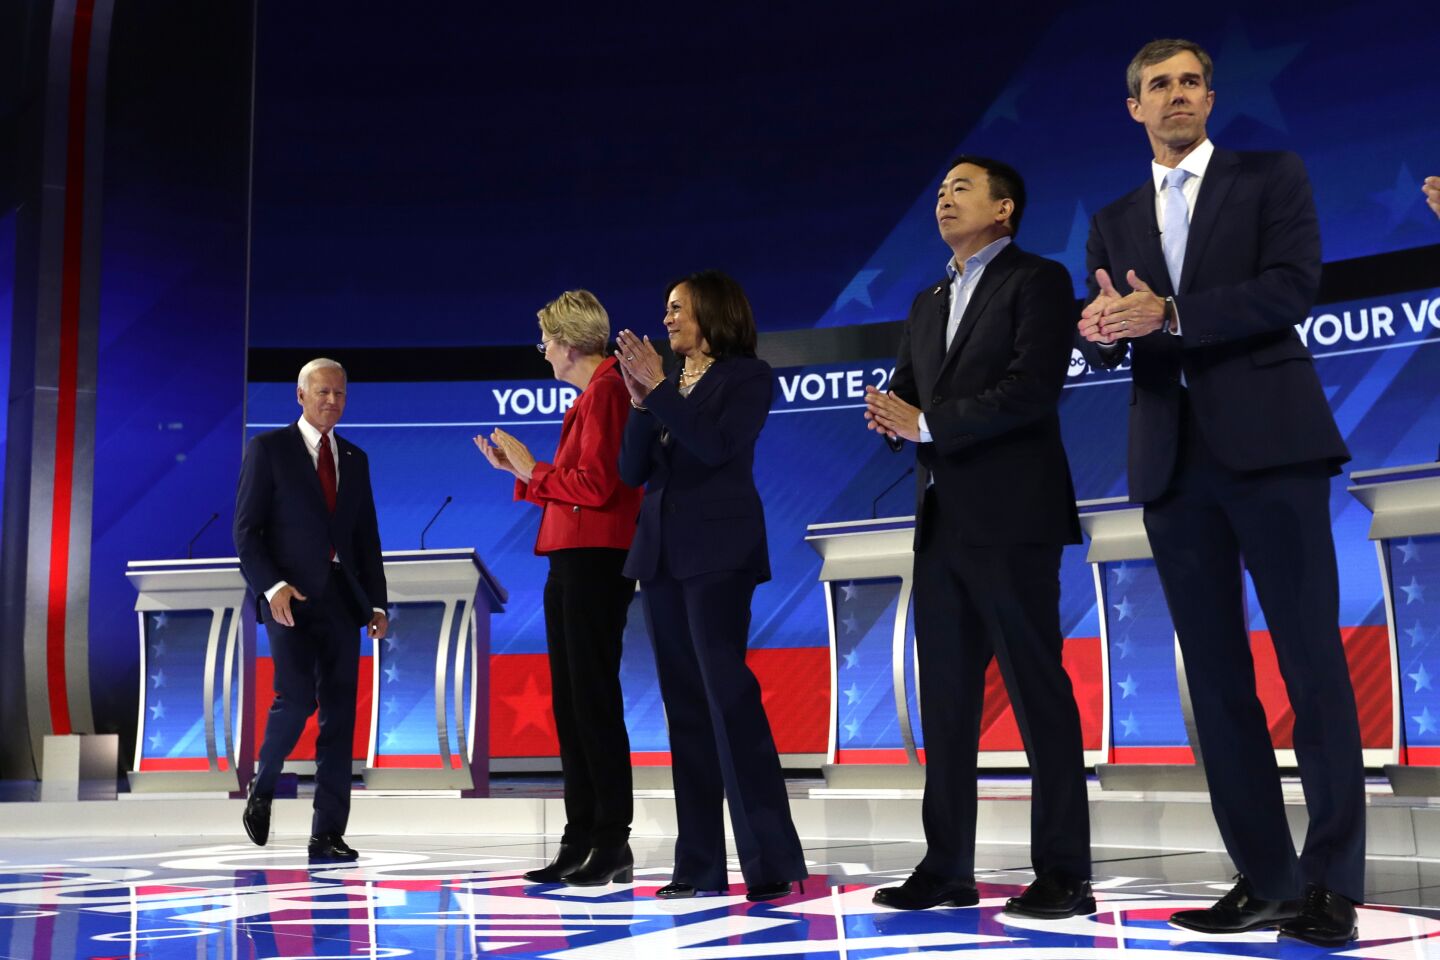 From left, Joe Biden, Elizabeth Warren, Kamala Harris, Andrew Yang and Beto O'Rourke before the debate.